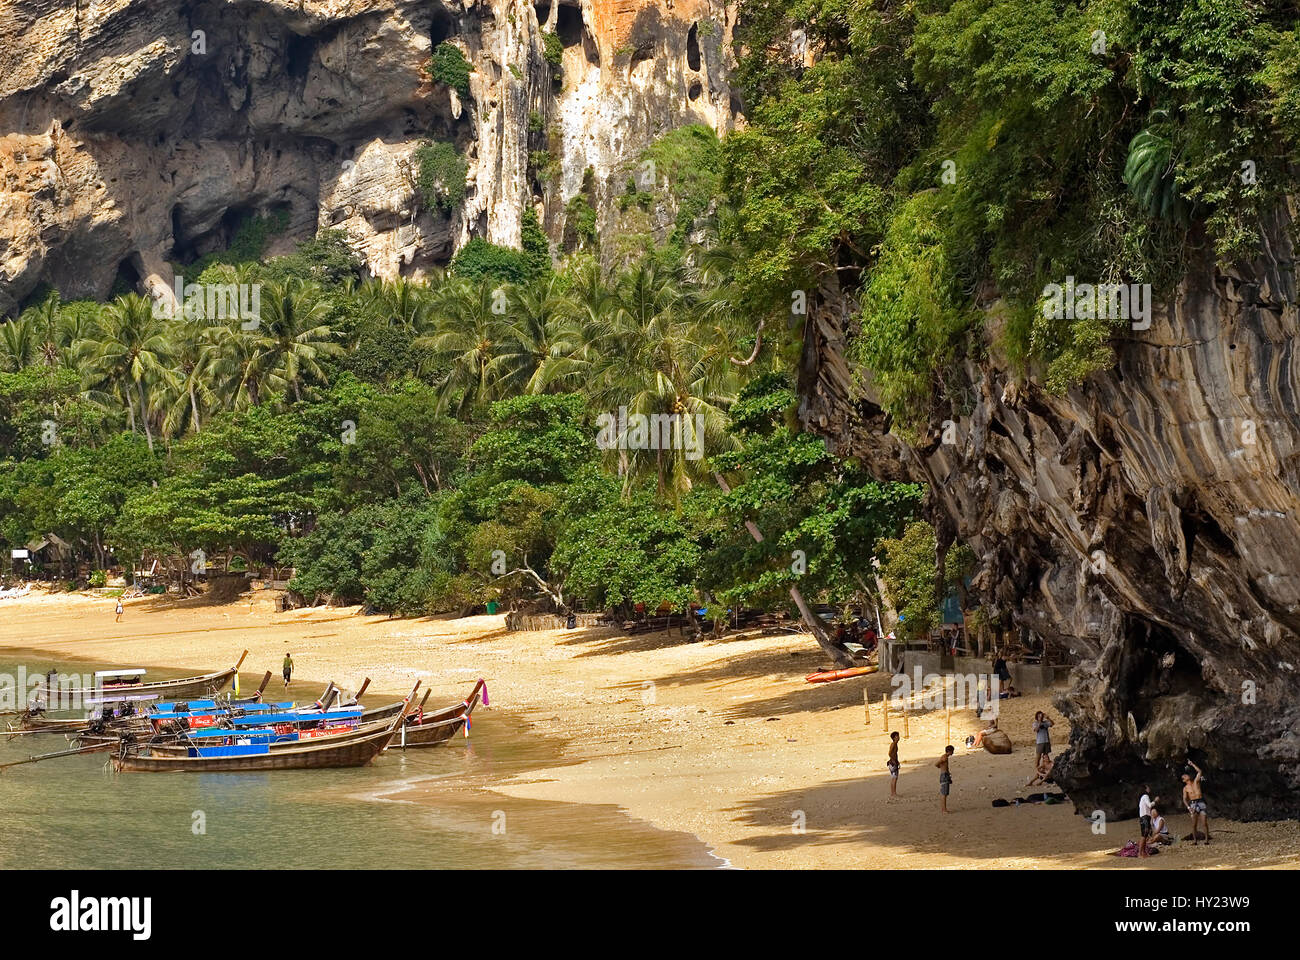 Stock Foto von einem Thai touristischen Boote am Strand von Ton Sai Beach in Tha Andaman See in der Nähe von Krabi. Im Vordergrund des Bildes sehen Sie Berg klettern Stockfoto